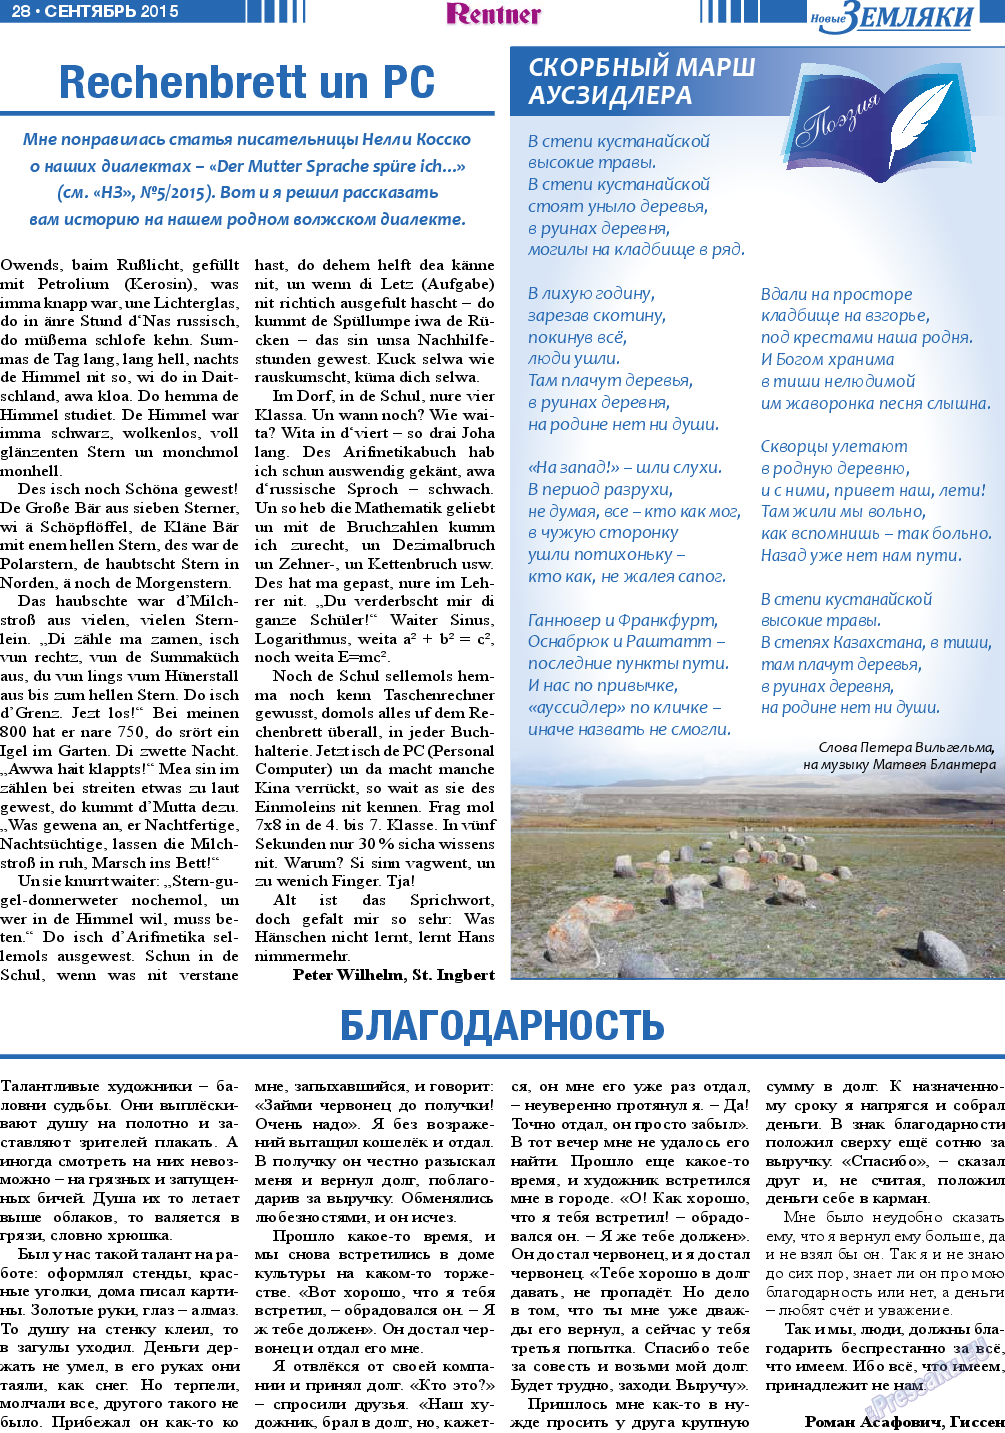 Новые Земляки, газета. 2015 №9 стр.28